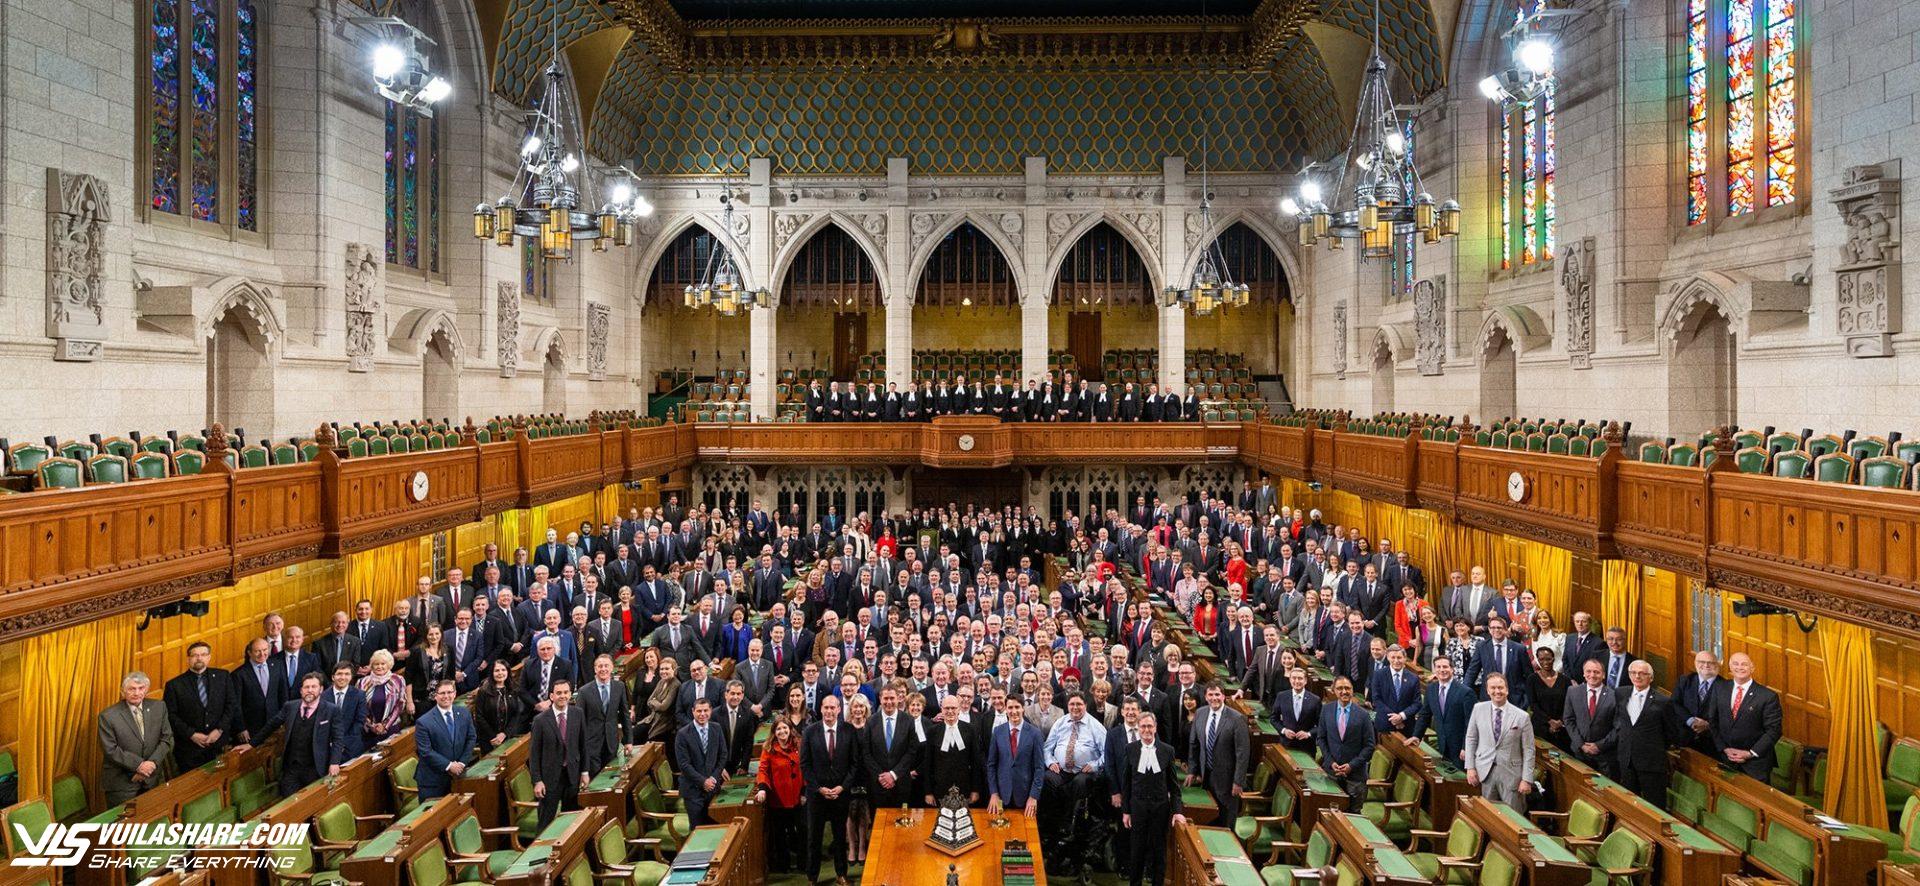 Canada mở rộng điều tra nghi vấn nghị sĩ làm việc cho nước ngoài- Ảnh 1.